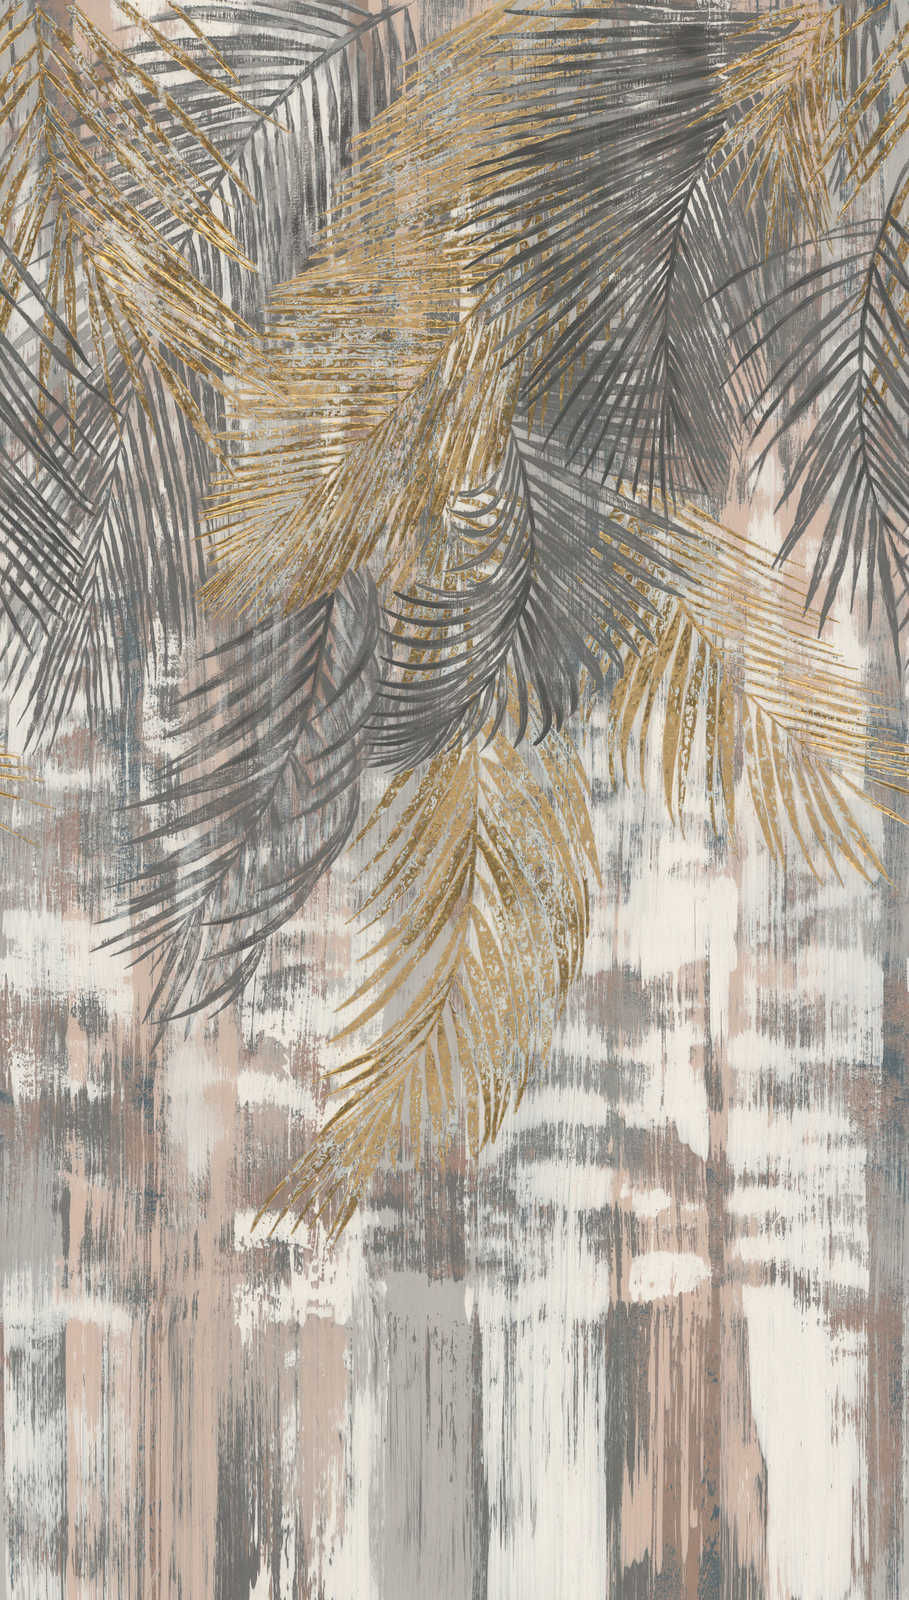             Papier peint intissé grandes feuilles de palmier dans un look usé - gris, jaune, beige
        